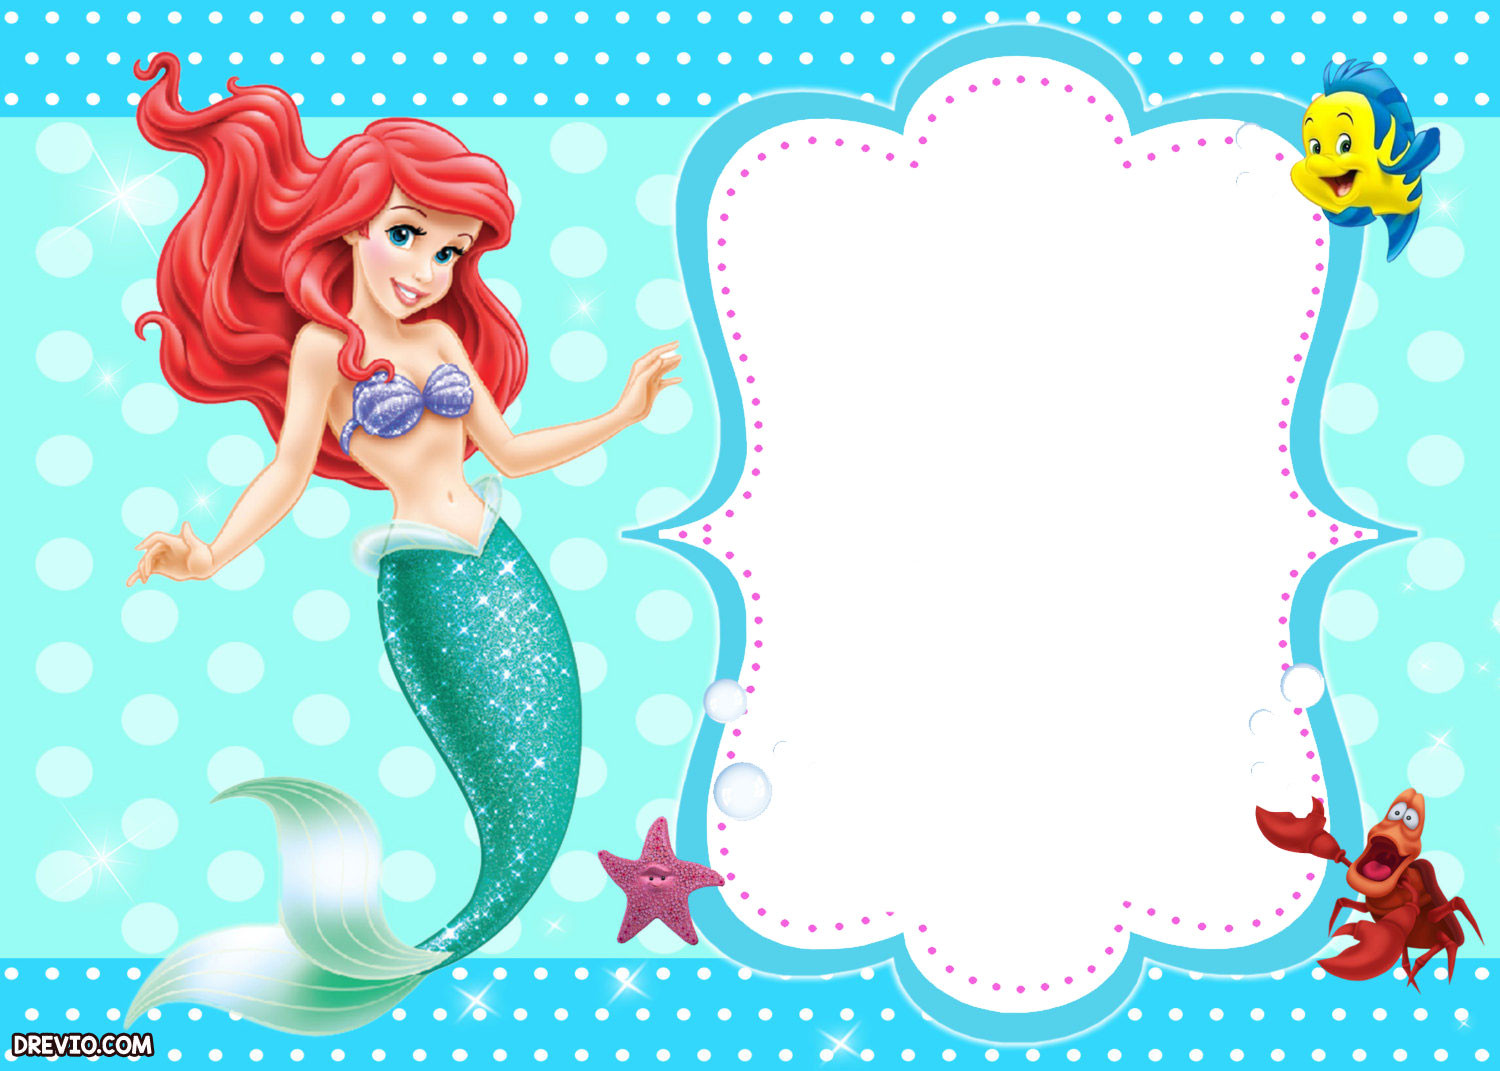 Little Mermaid Birthday Invitations
 Updated Free Printable Ariel the Little Mermaid